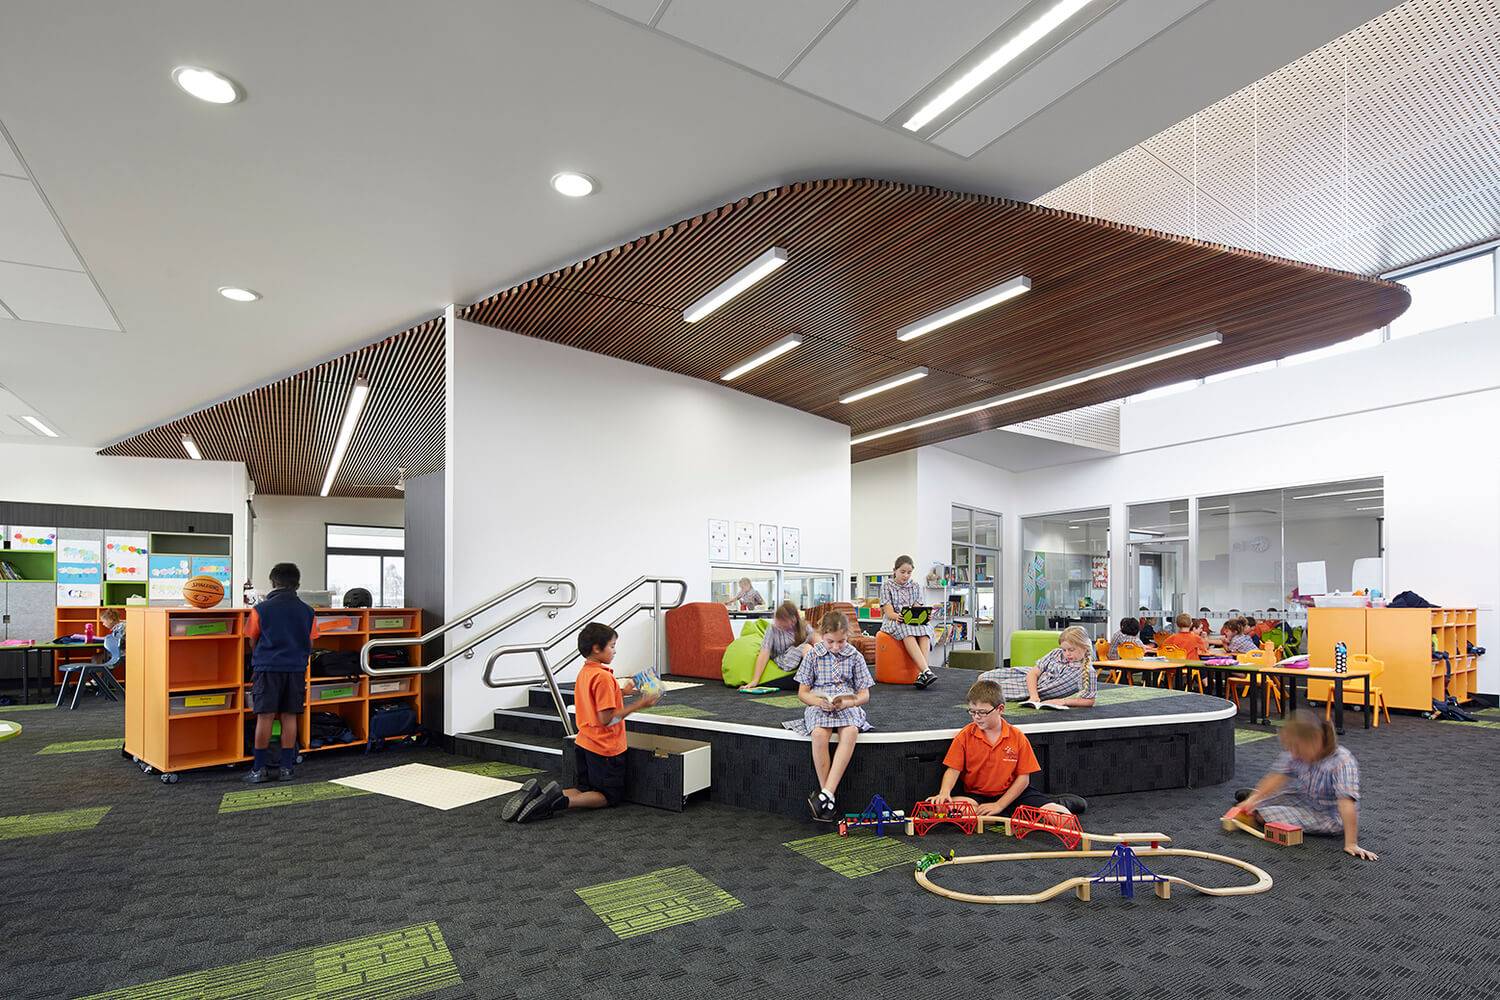 Trường Tiểu học Our Lady of the Southern Cross tại Úc thiết kế nhiều khu vực học tập